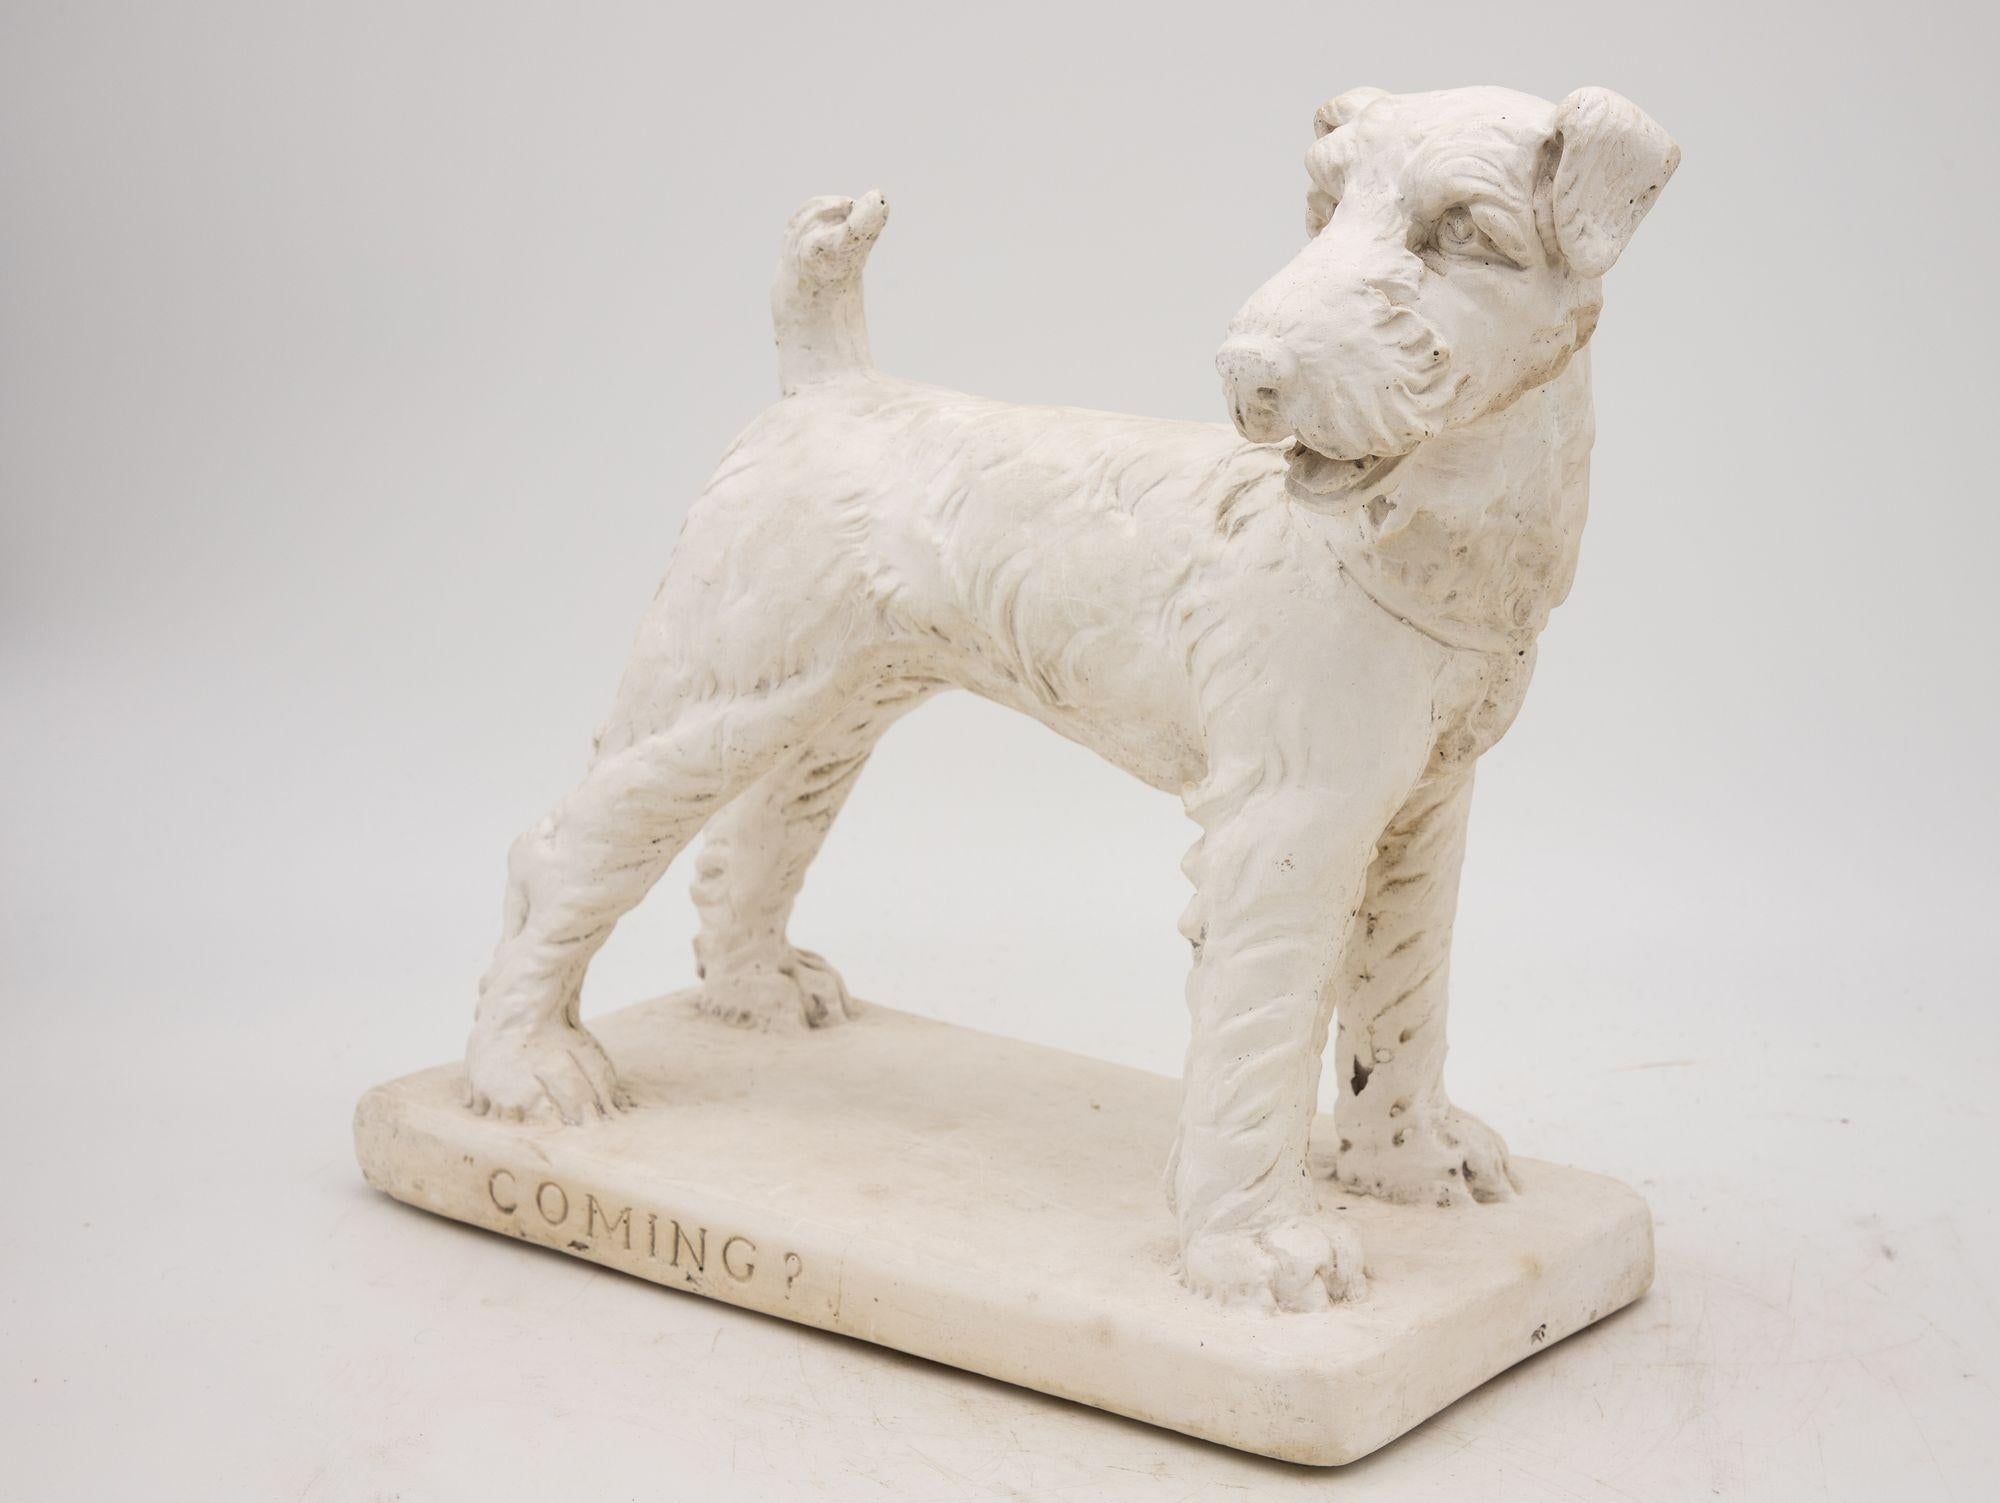 Dieses Gipsterrier-Hundemodell ist ein entzückendes Relikt aus dem 20. Jahrhundert und strahlt zeitlosen Charme aus. Mit viel Liebe zum Detail sind die lebensechten Züge des Terriers meisterhaft eingefangen und zeigen die Kunstfertigkeit der